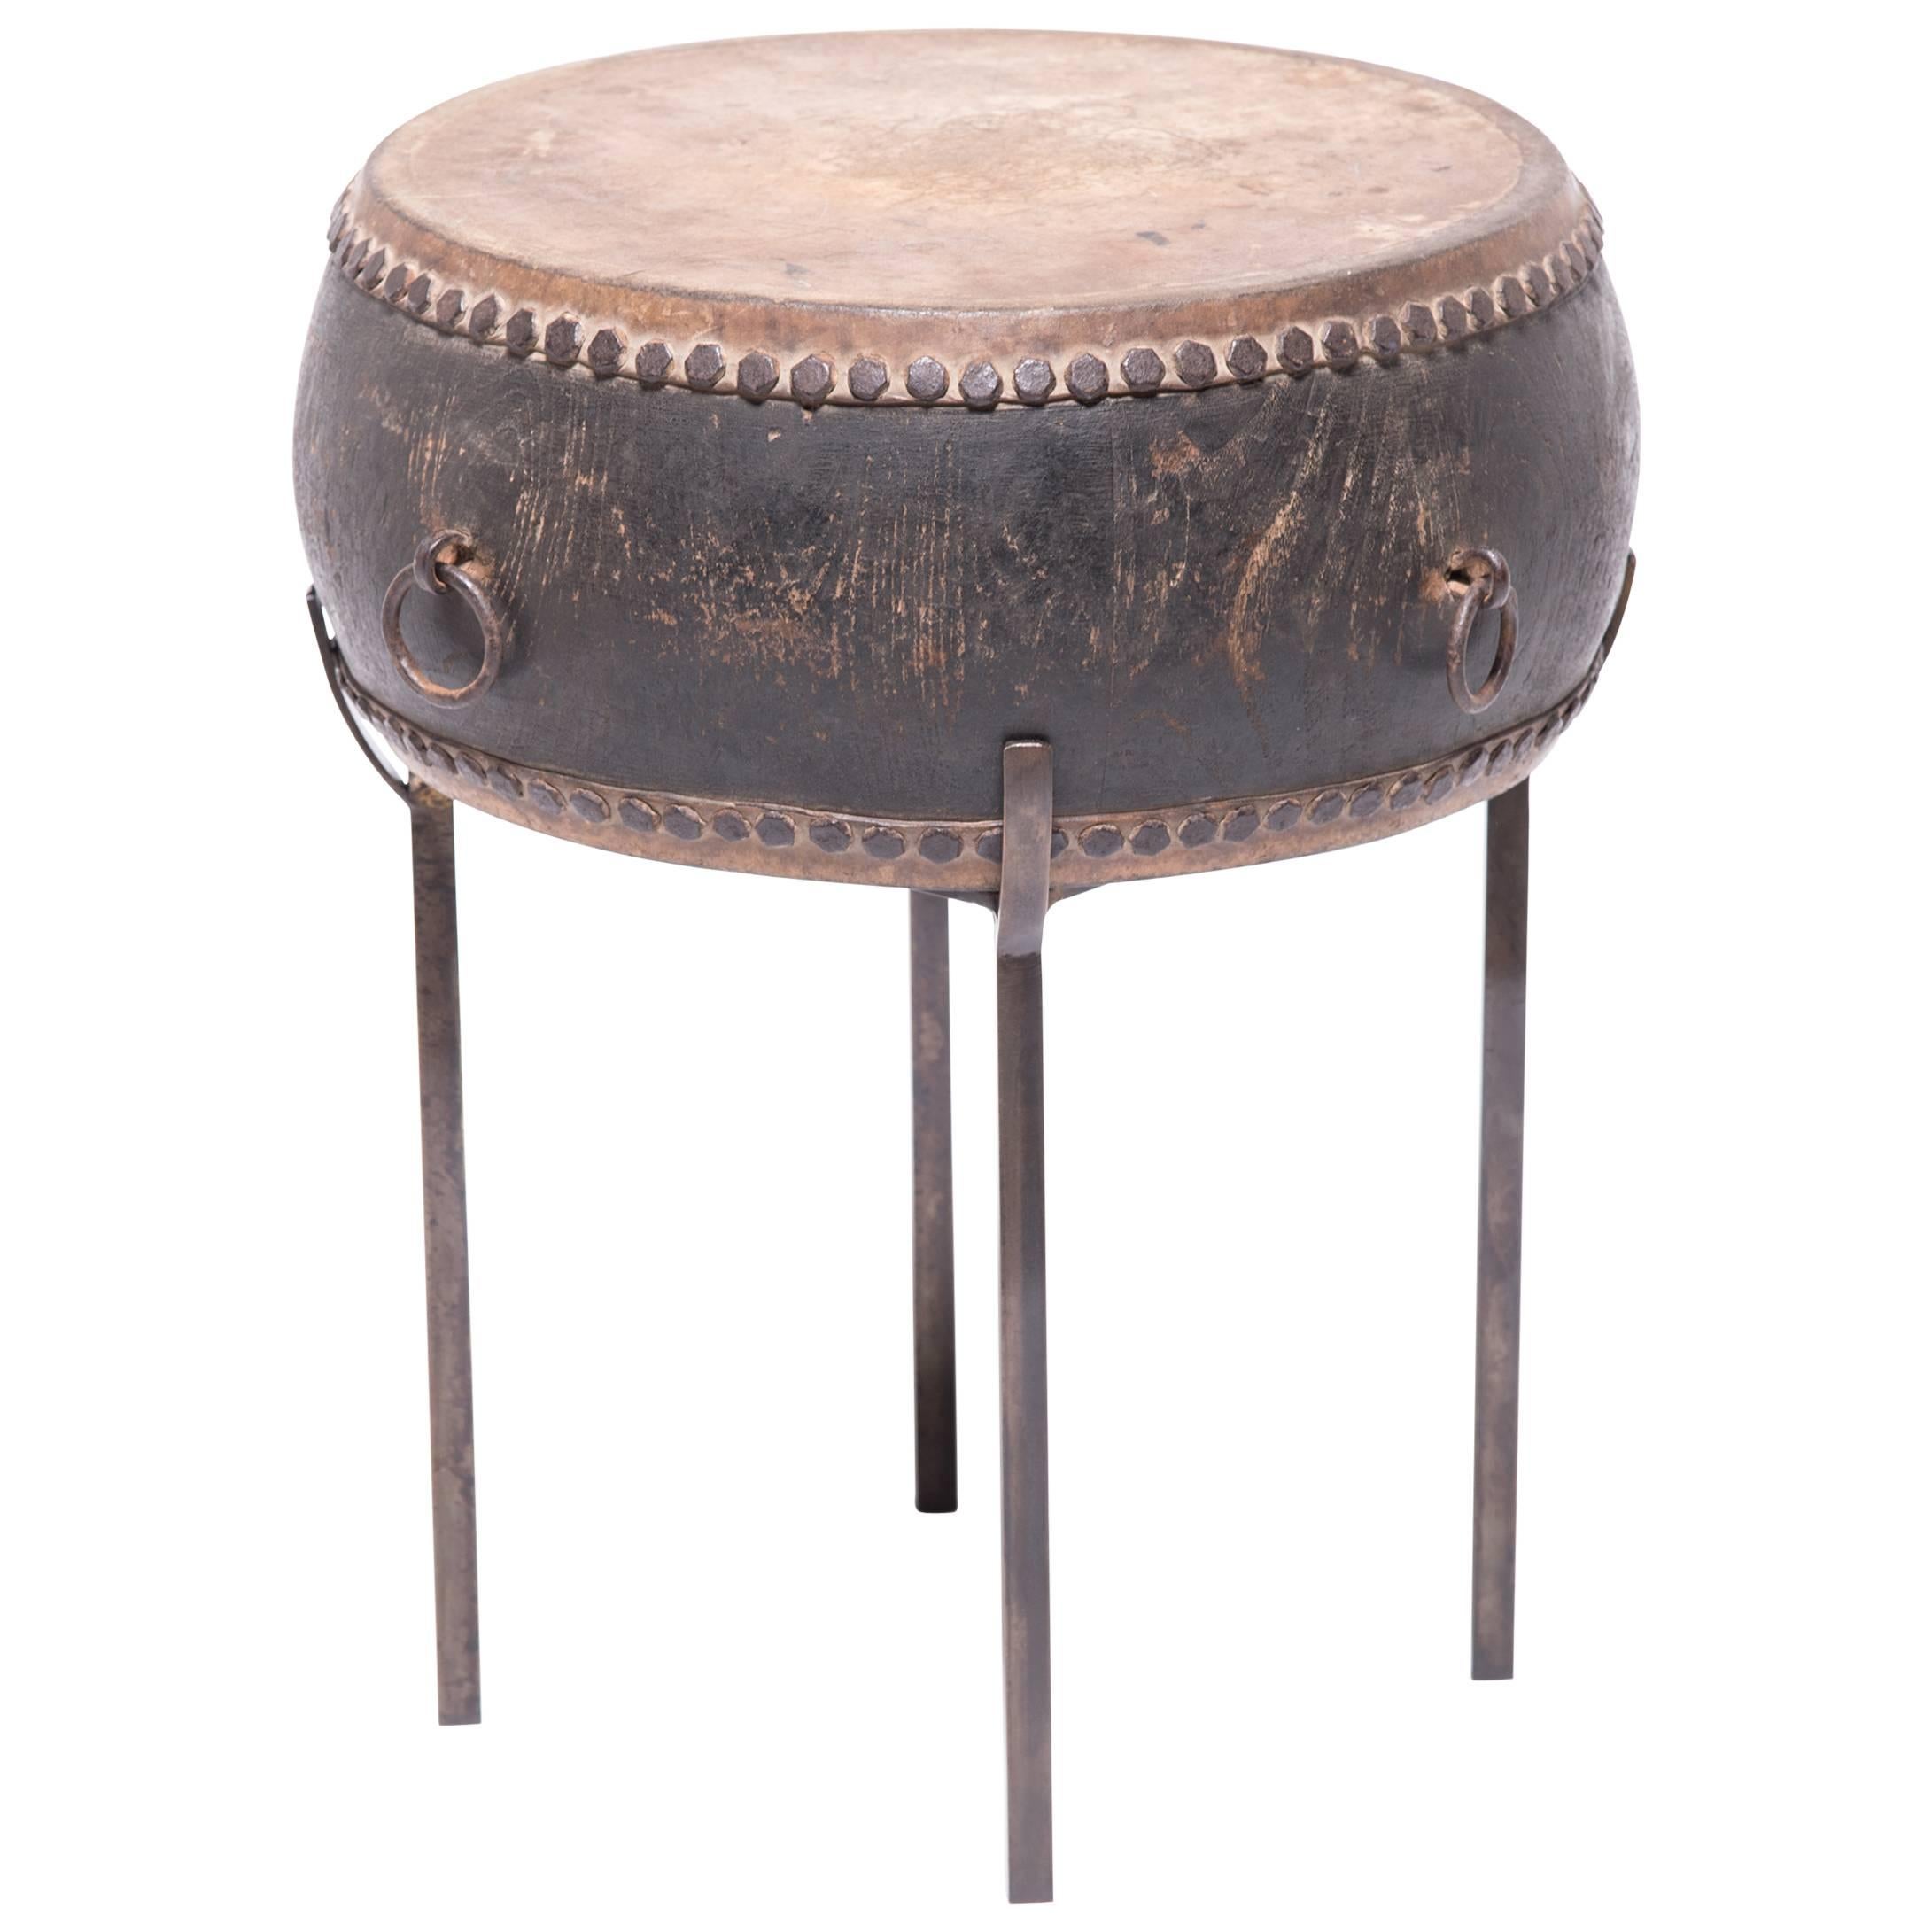 Chinese Peking Drum Table